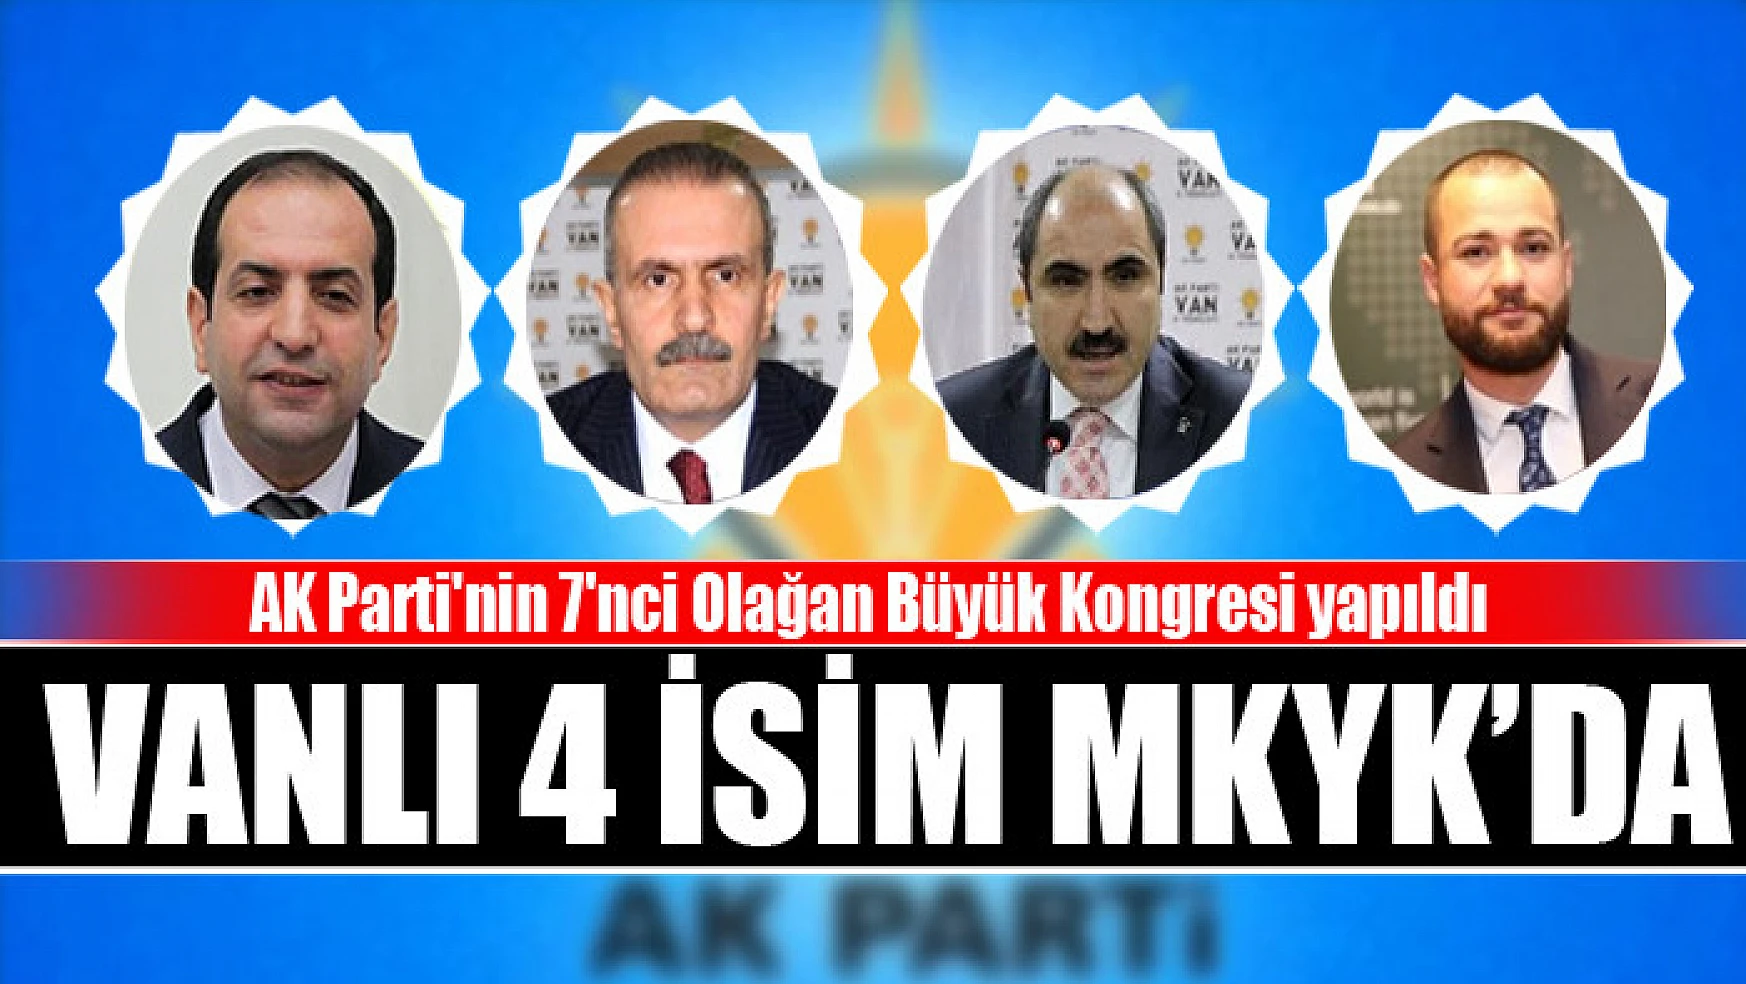 AK Parti'nin 7'nci Olağan Büyük Kongresi yapıldı Vanlı 4 isim MKYK'da